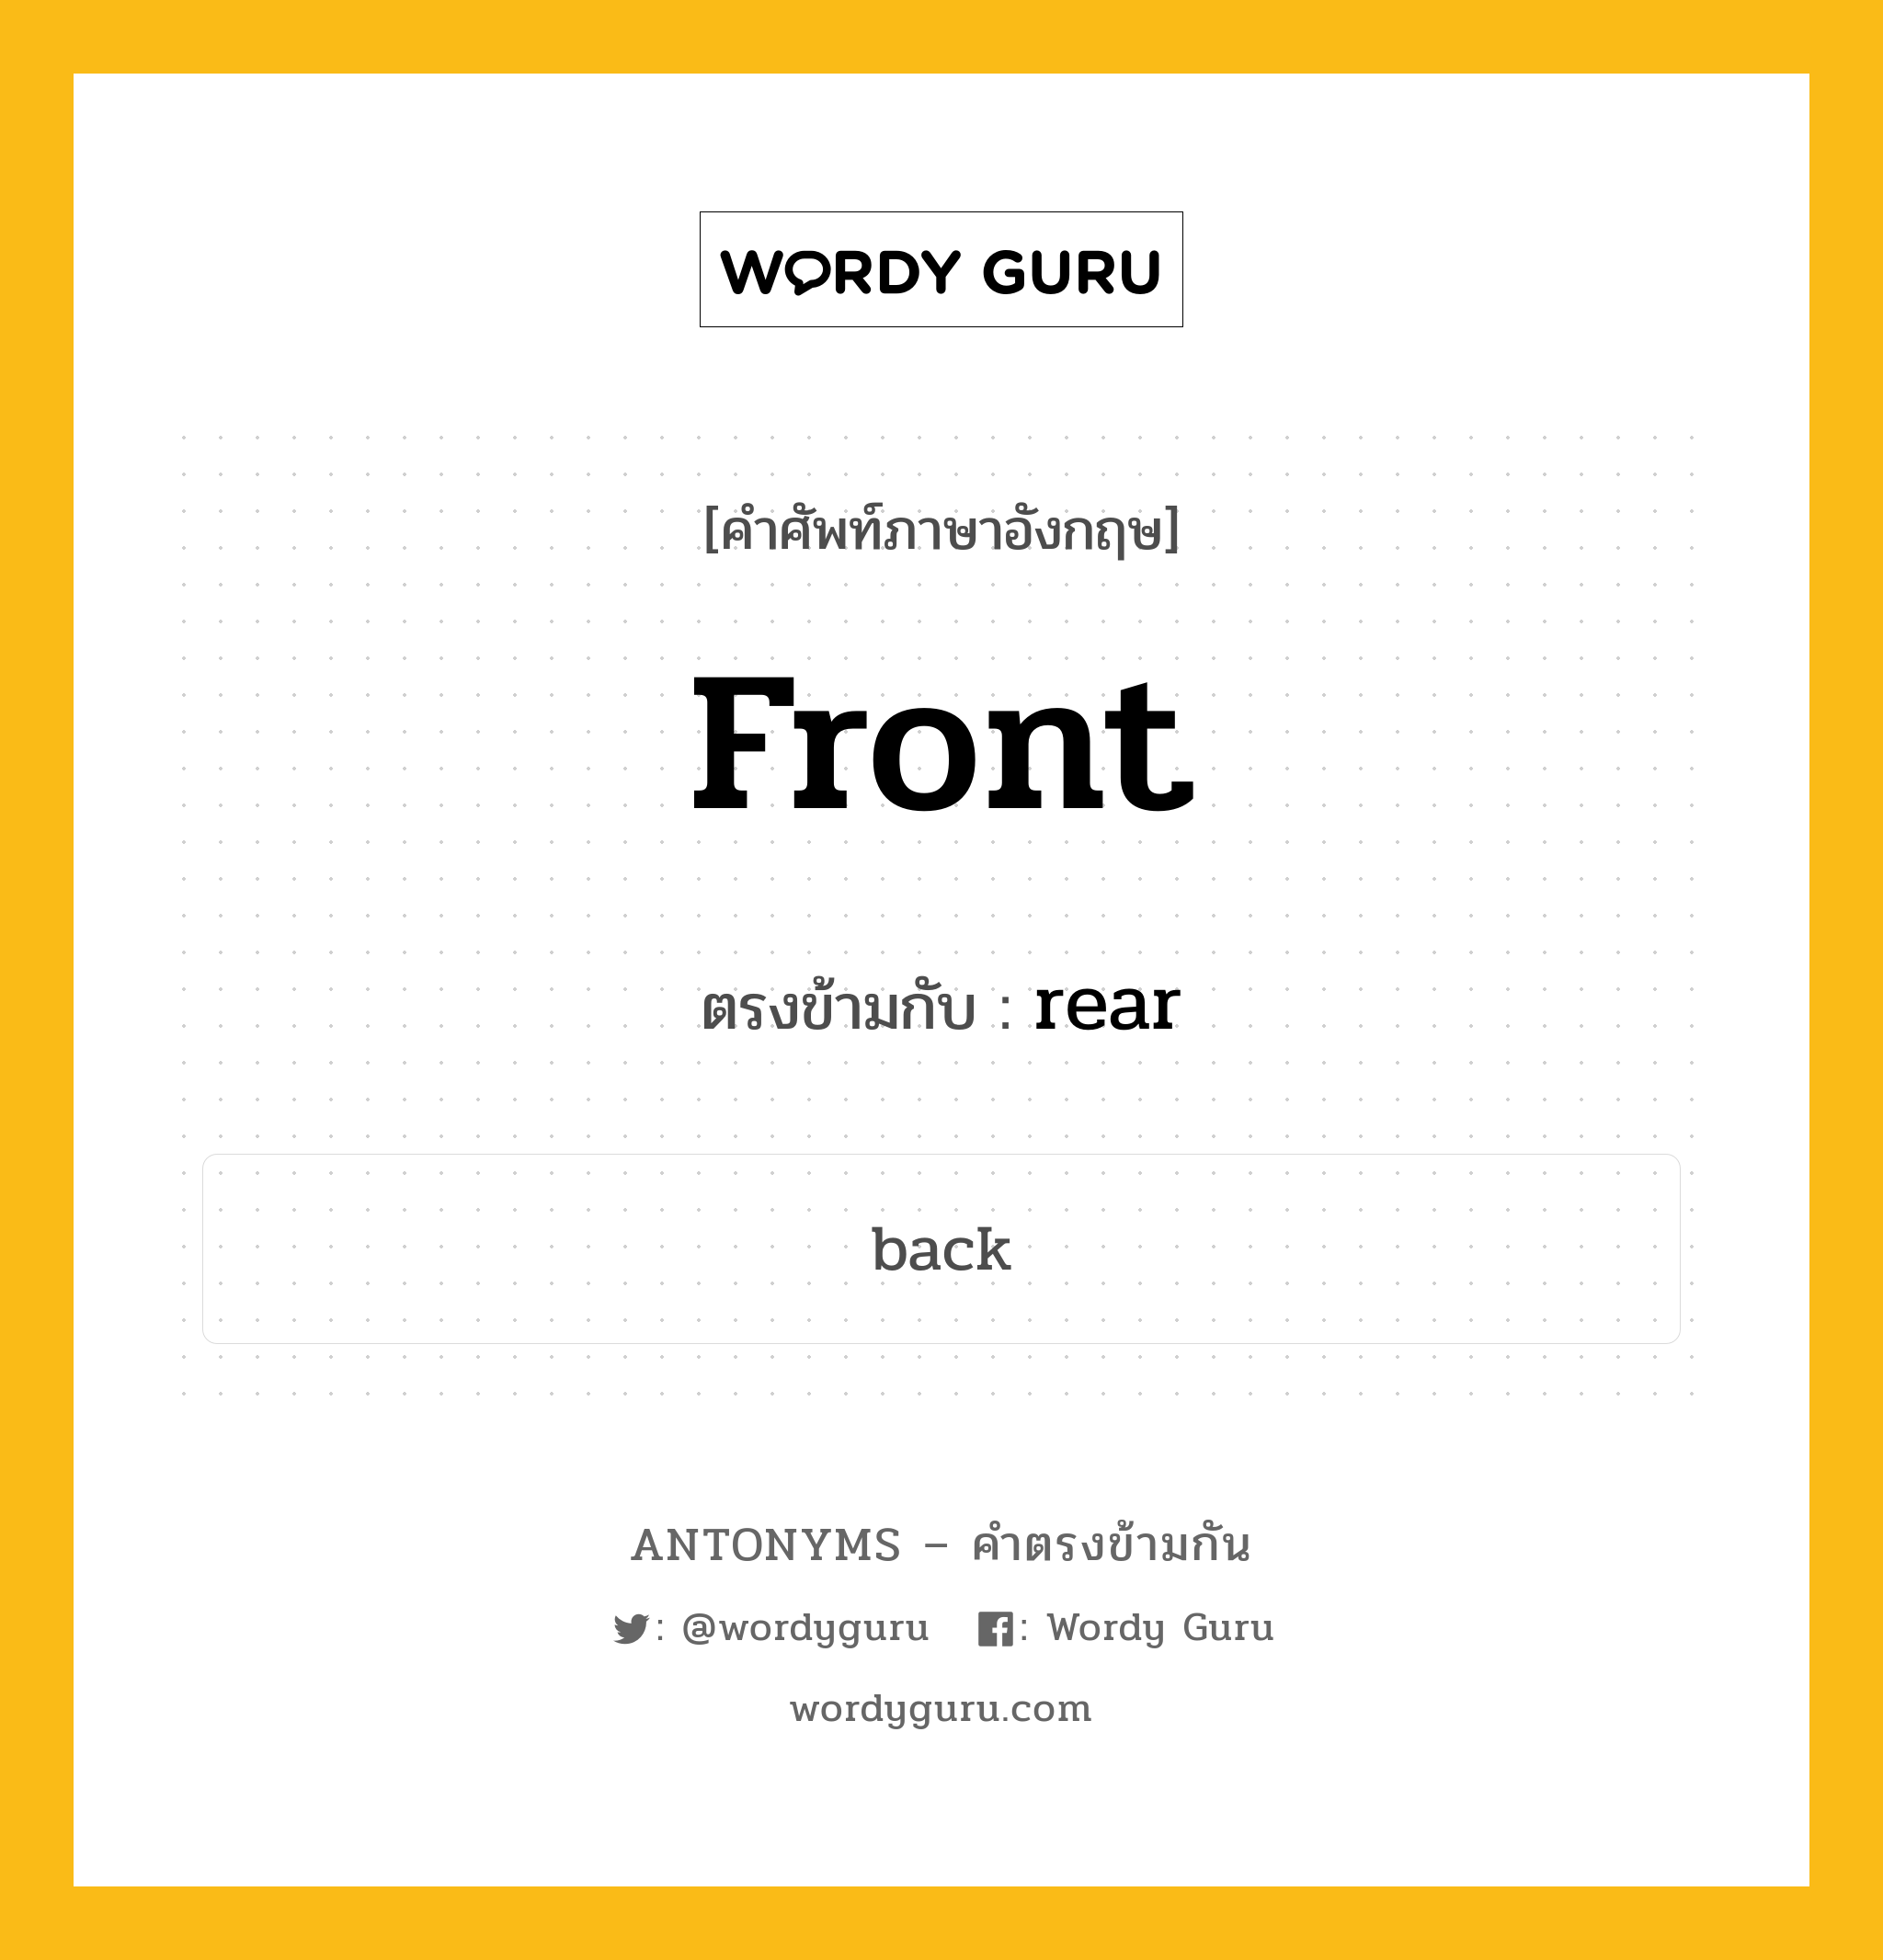 front เป็นคำตรงข้ามกับคำไหนบ้าง?, คำศัพท์ภาษาอังกฤษ front ตรงข้ามกับ rear หมวด rear